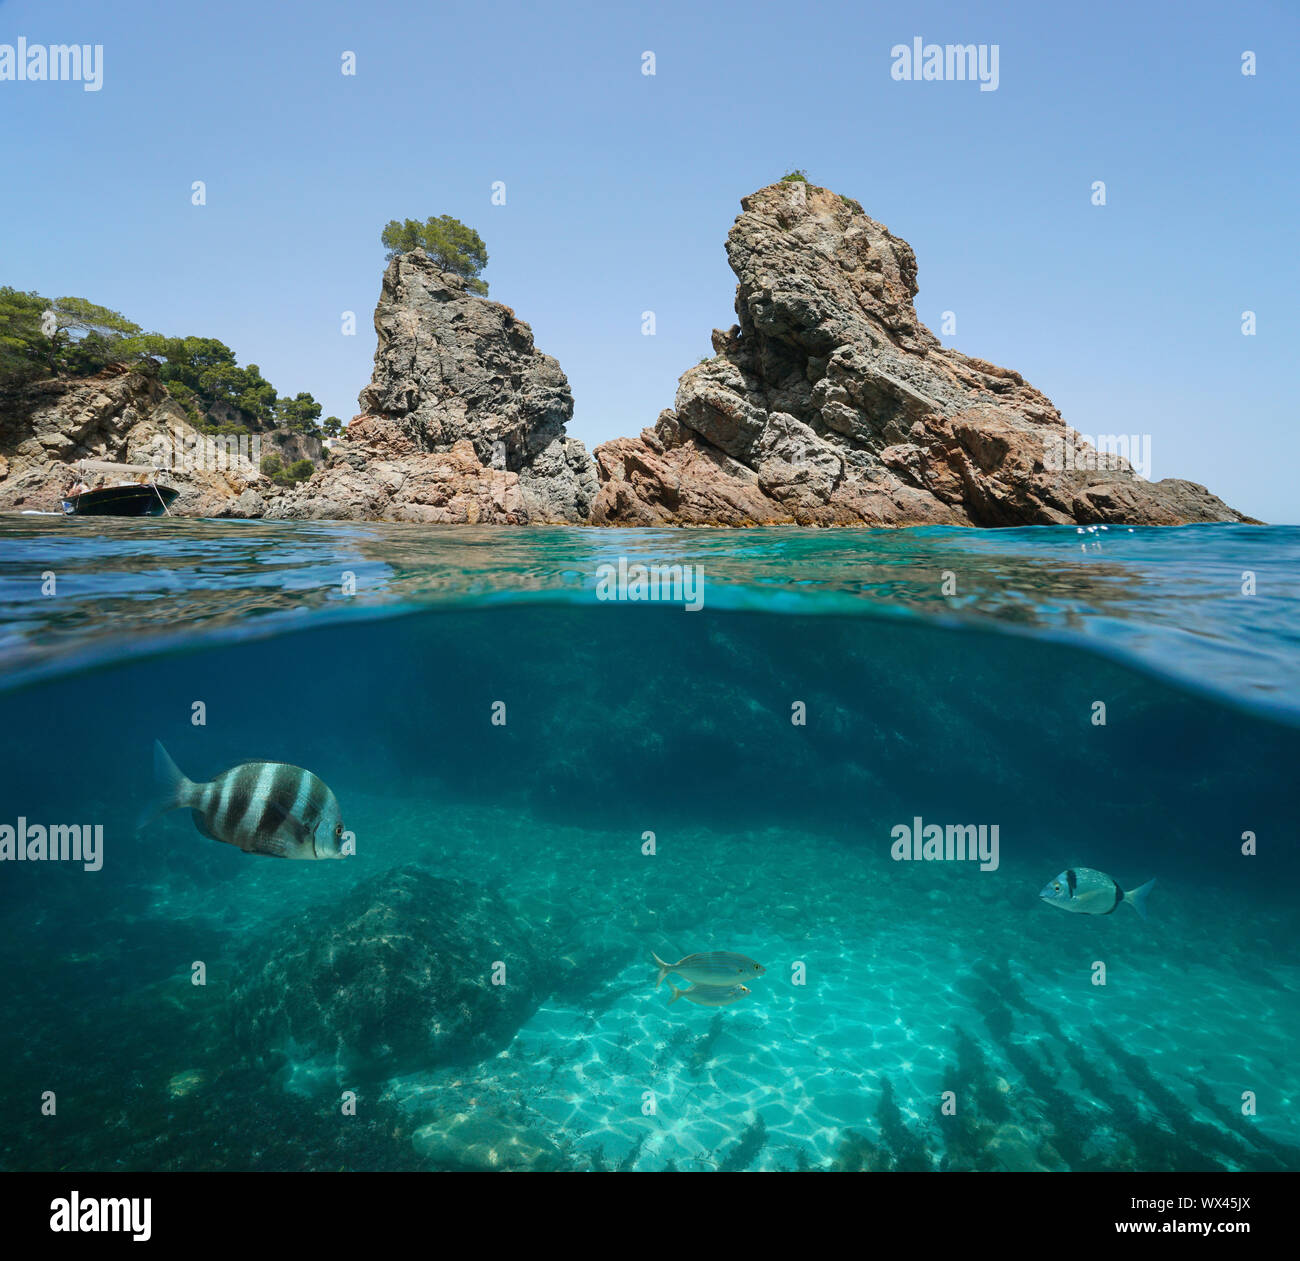 Les îlots rocheux avec quelques poissons sous l'eau, mer Méditerranée, Espagne, Costa Brava, Catalogne, Calella de Palafrugell, split voir la moitié sur et sous l'eau Banque D'Images